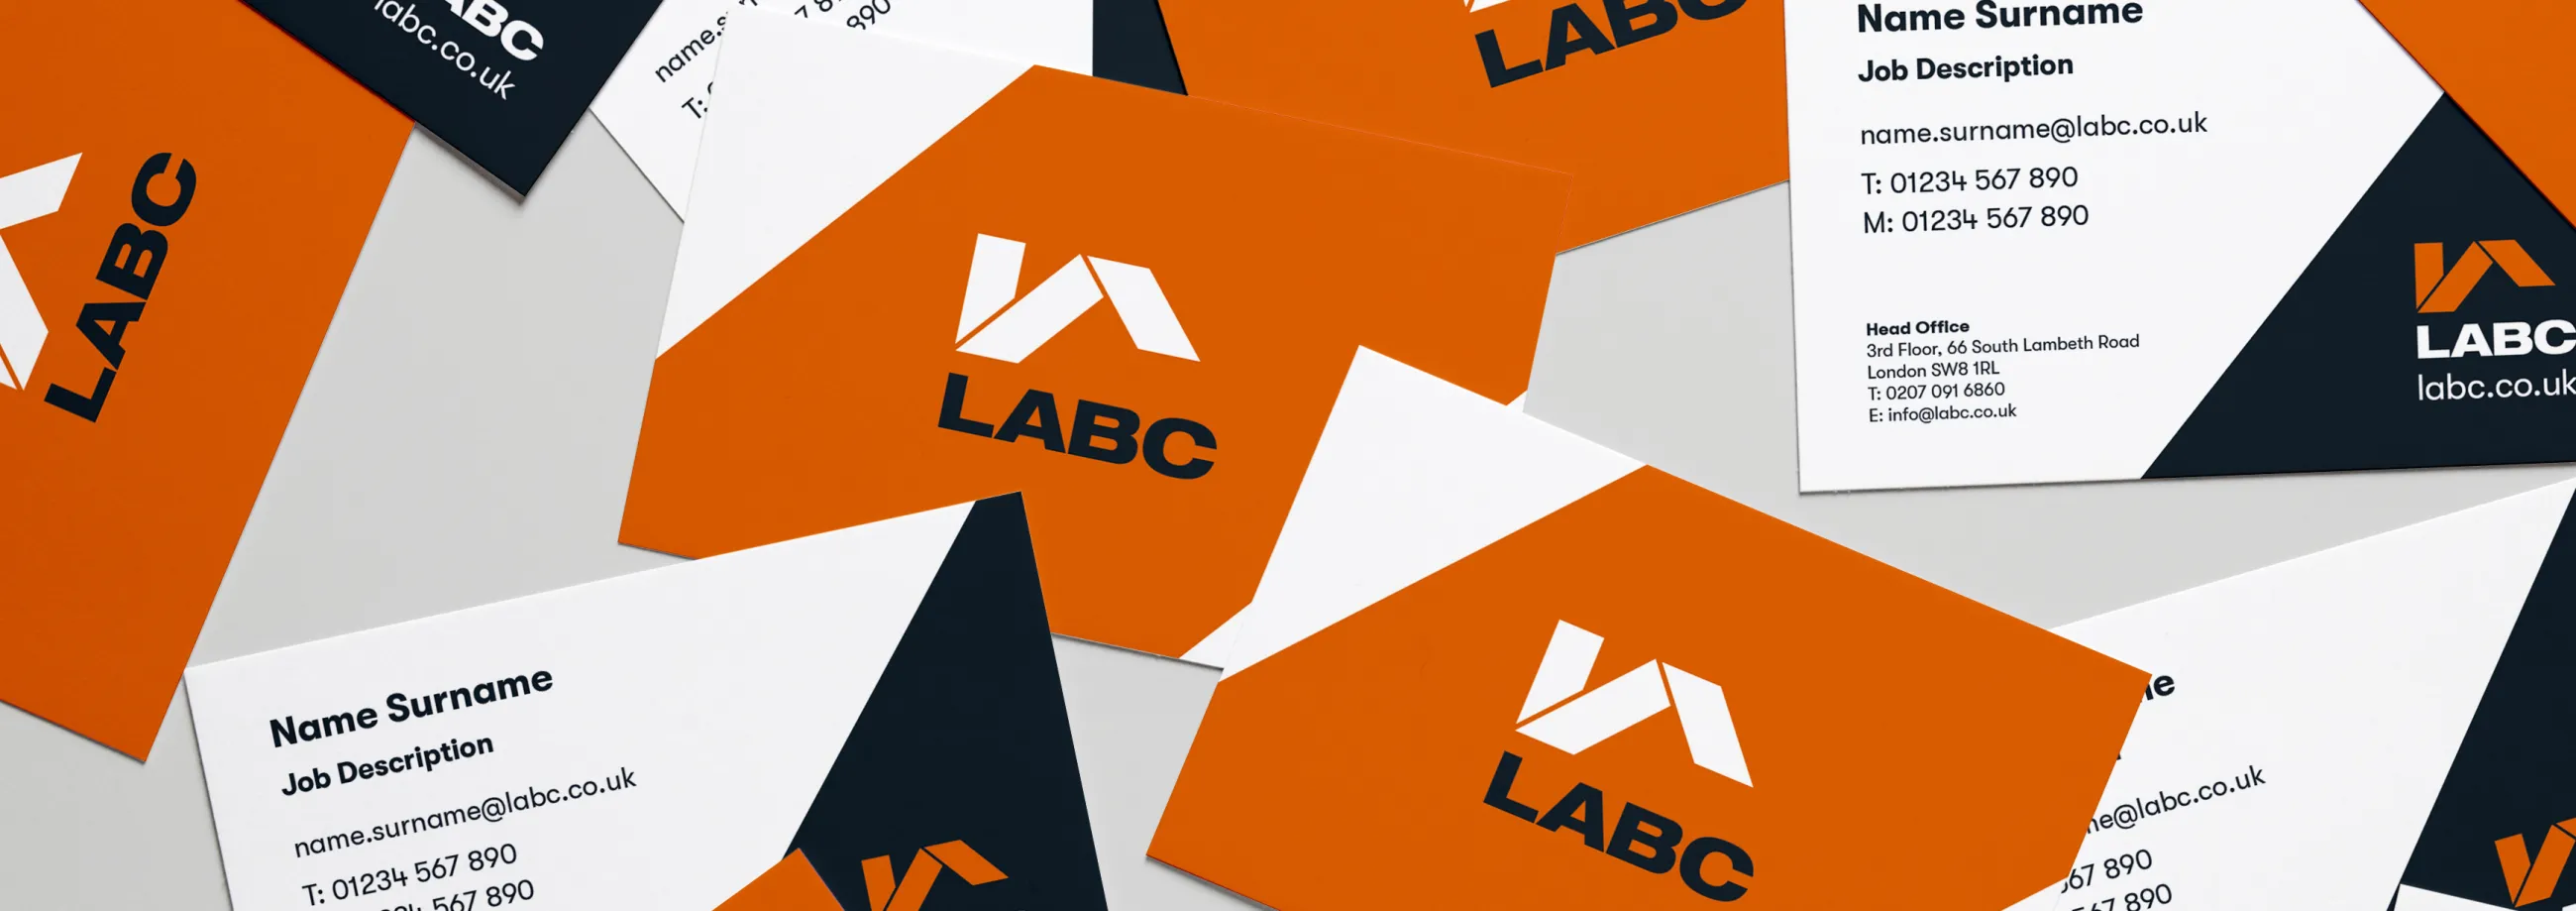 LABC business cards